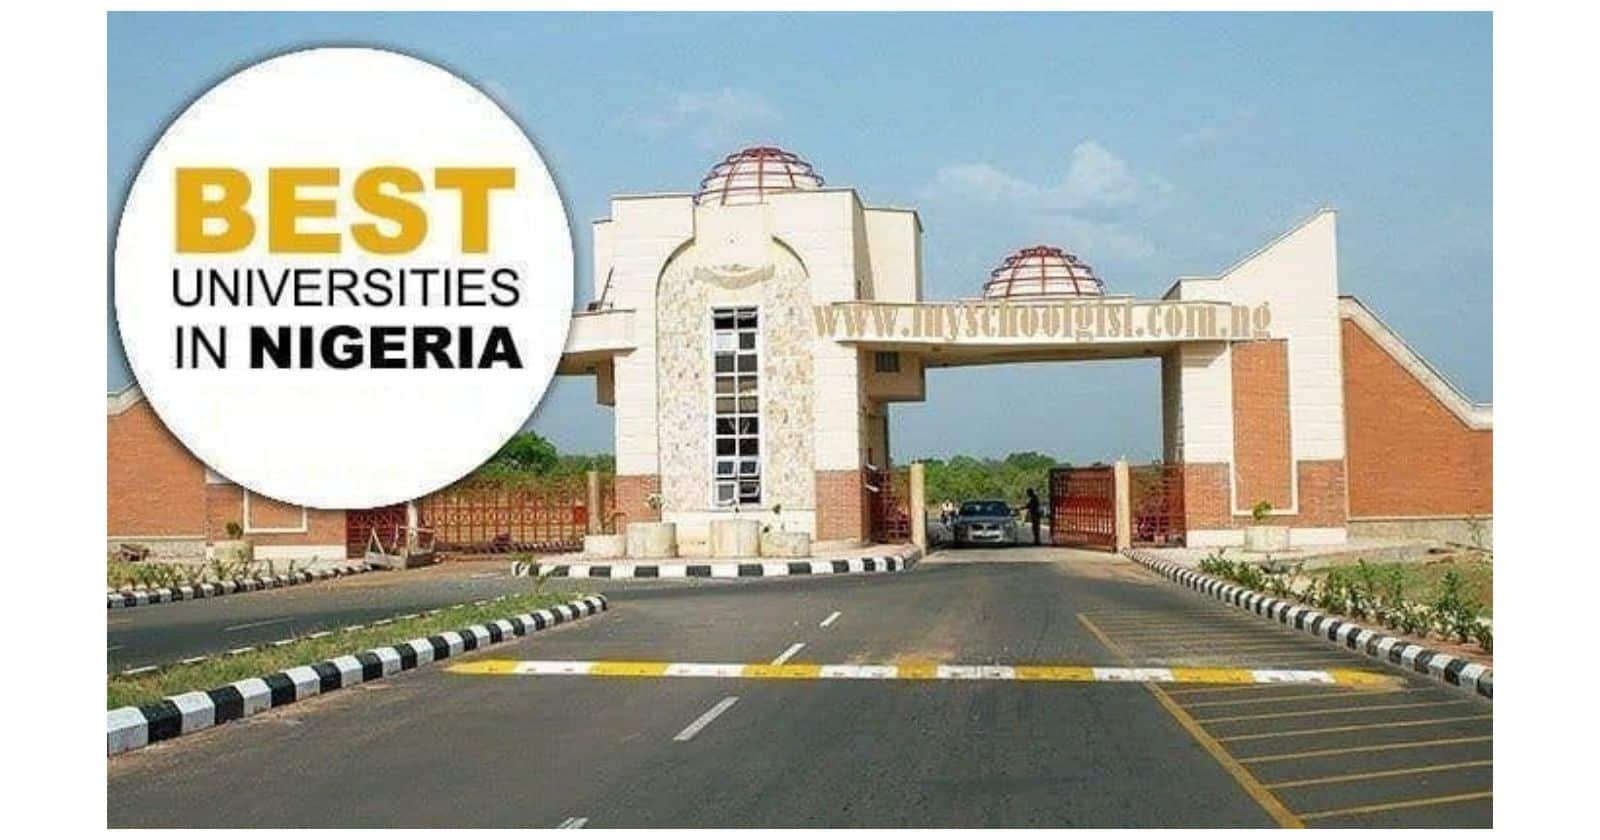 Top Universities in Nigeria